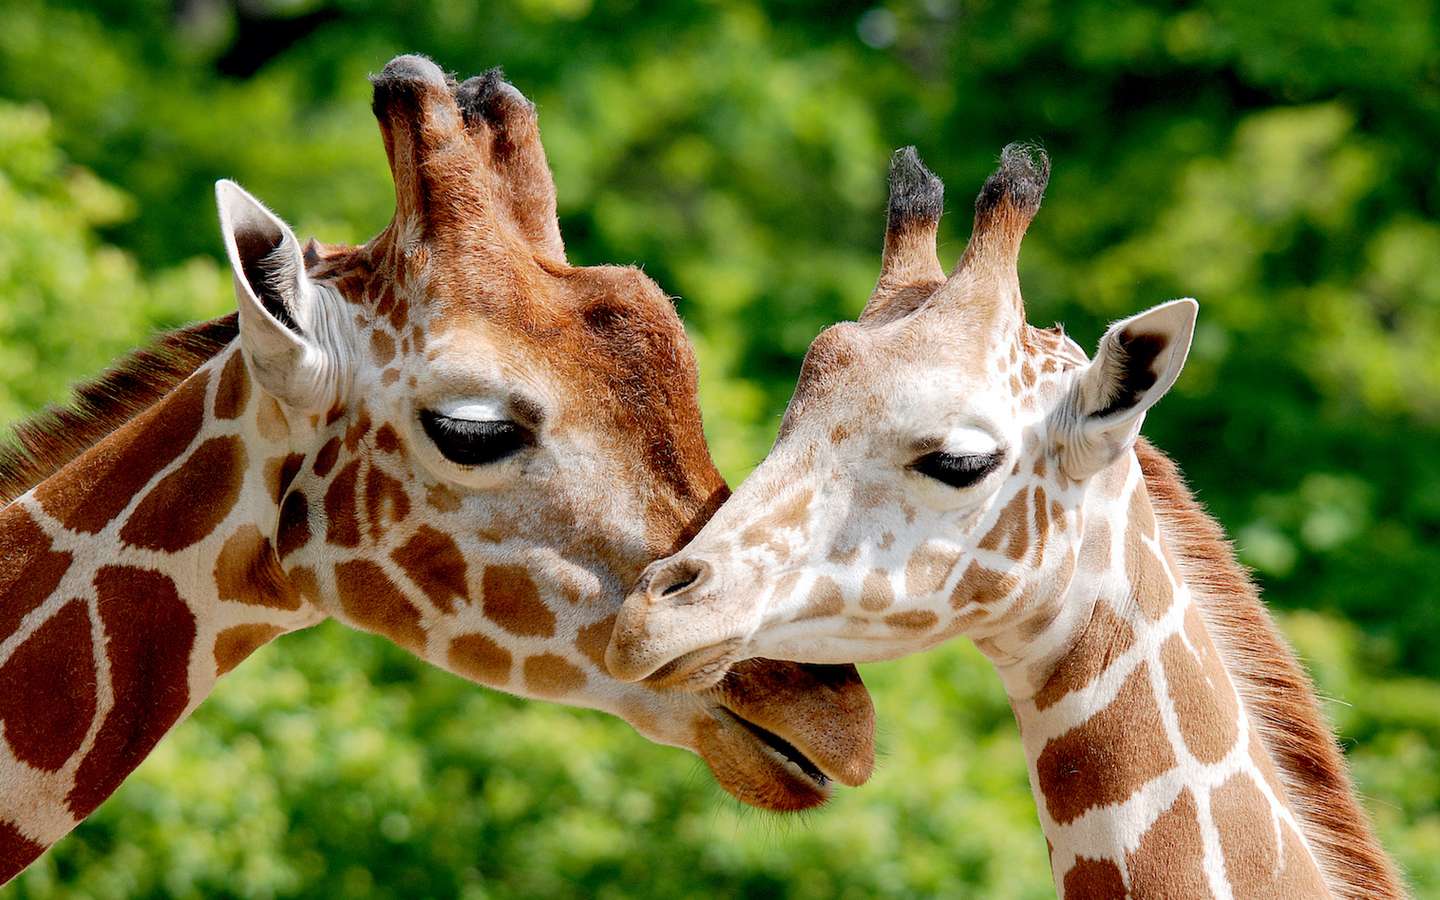 Comment la girafe survit à son long cou